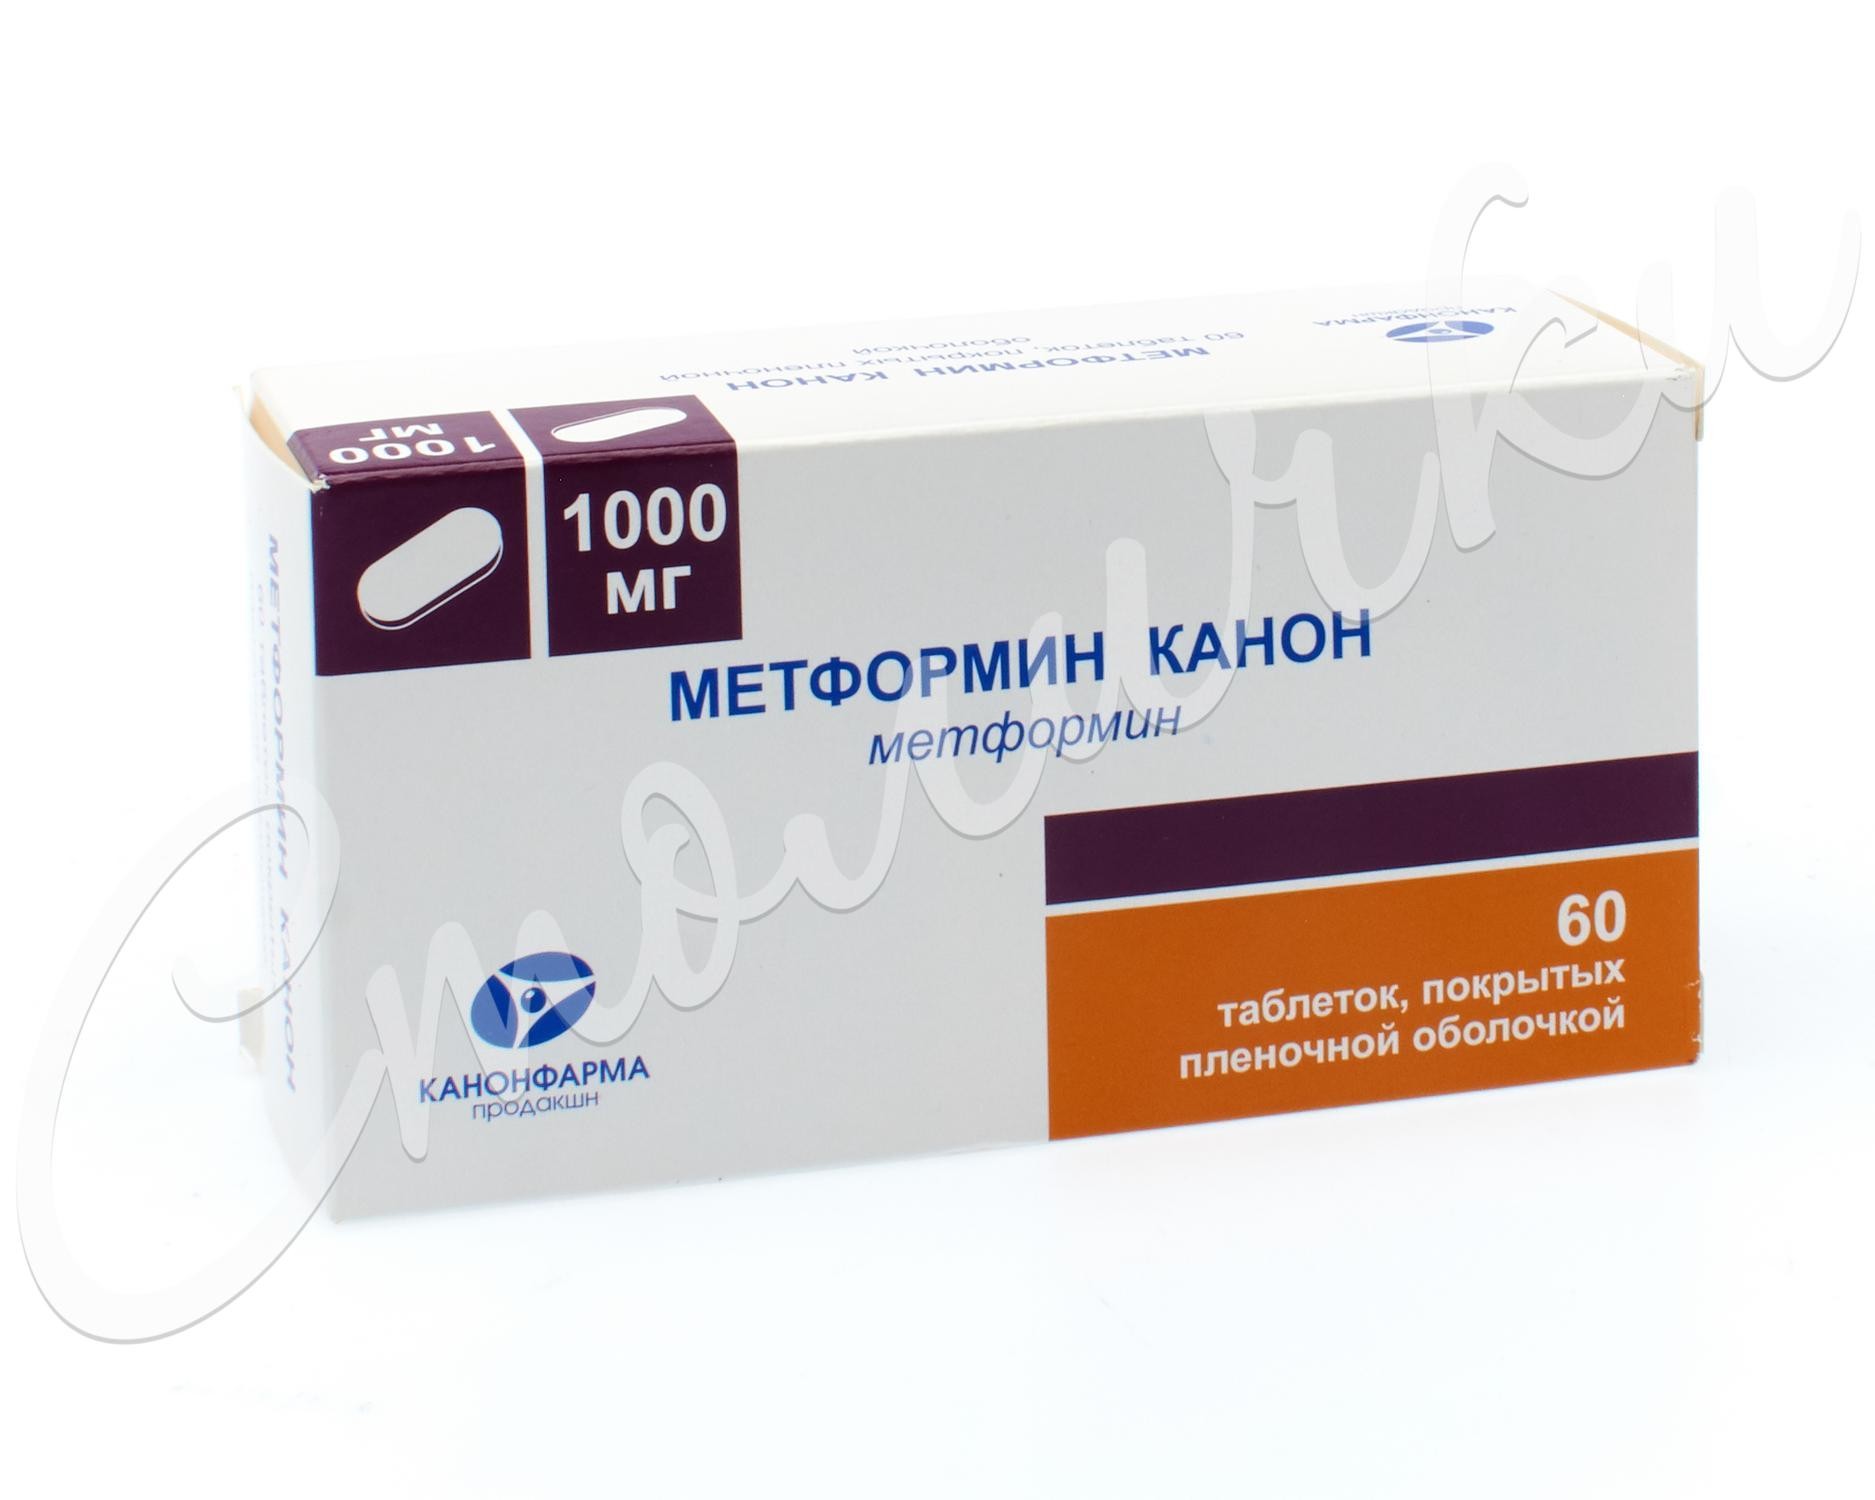 Метформин после 60 лет. Метформин таблетки 1000мг. Метформин 1000мг 60 таб. Турецкий метформин 1000мг. Метформин 1000 мг 60.